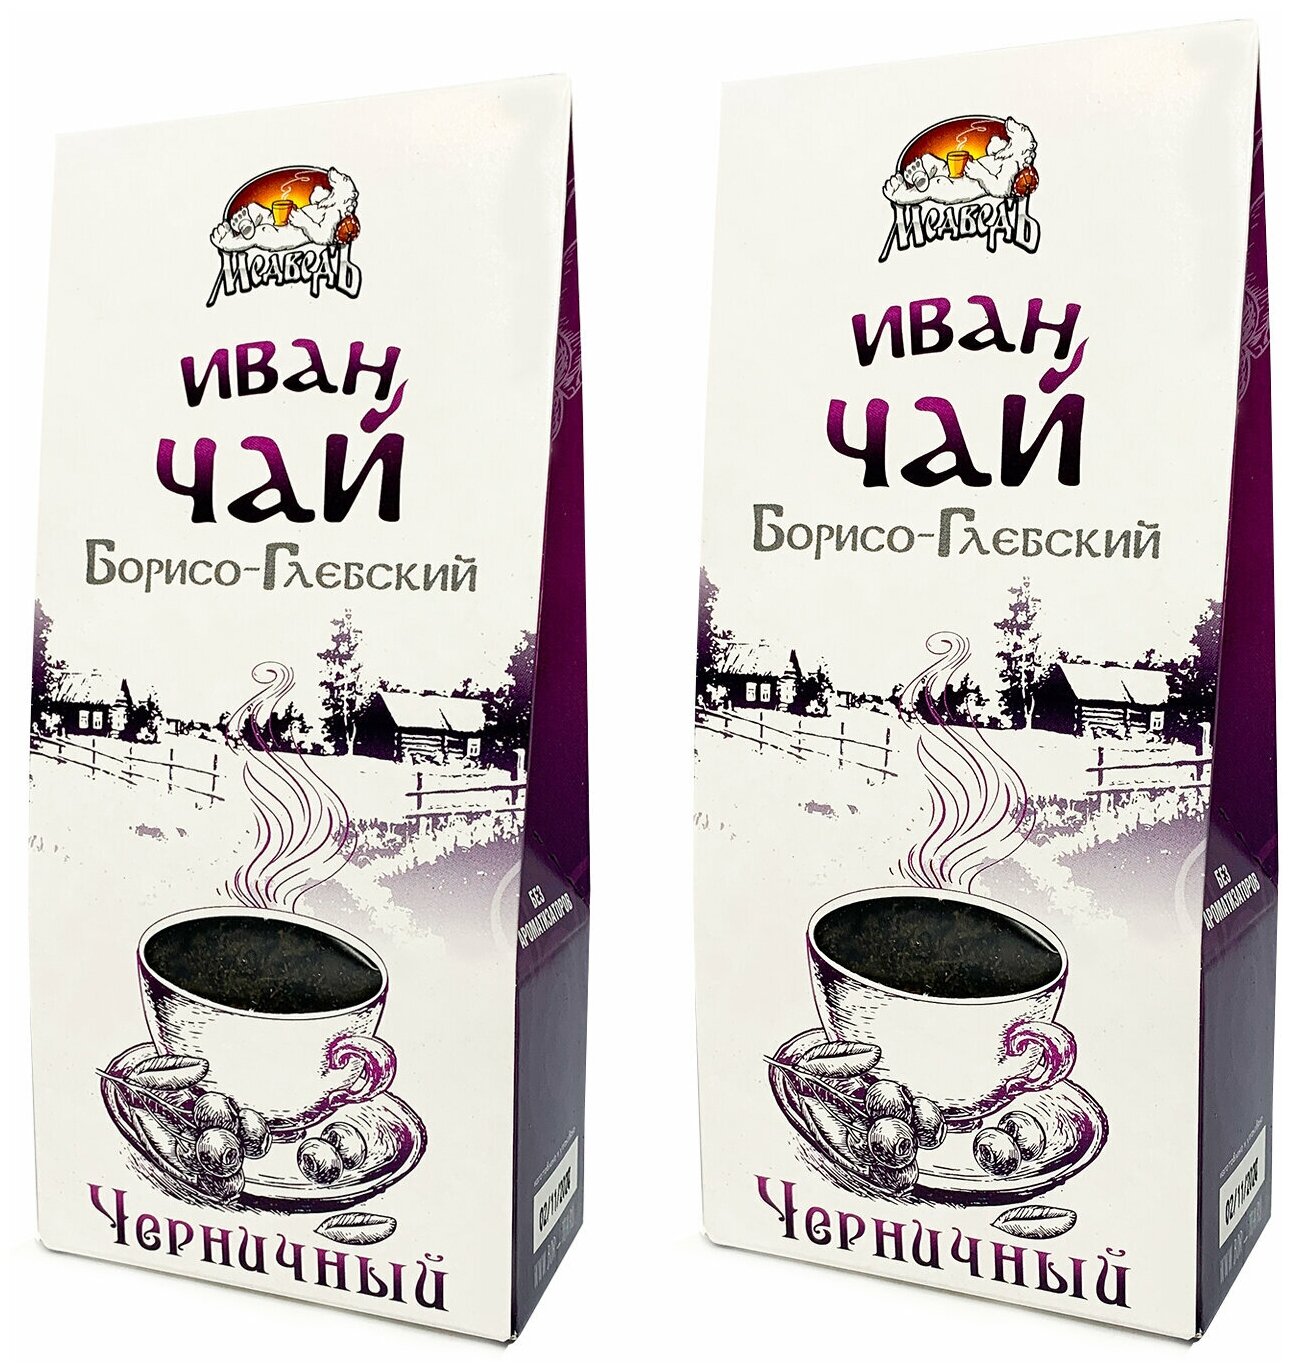 Напиток чайный Иван-чай "Борисоглебский" "черничный" пачка 50г набор 2шт